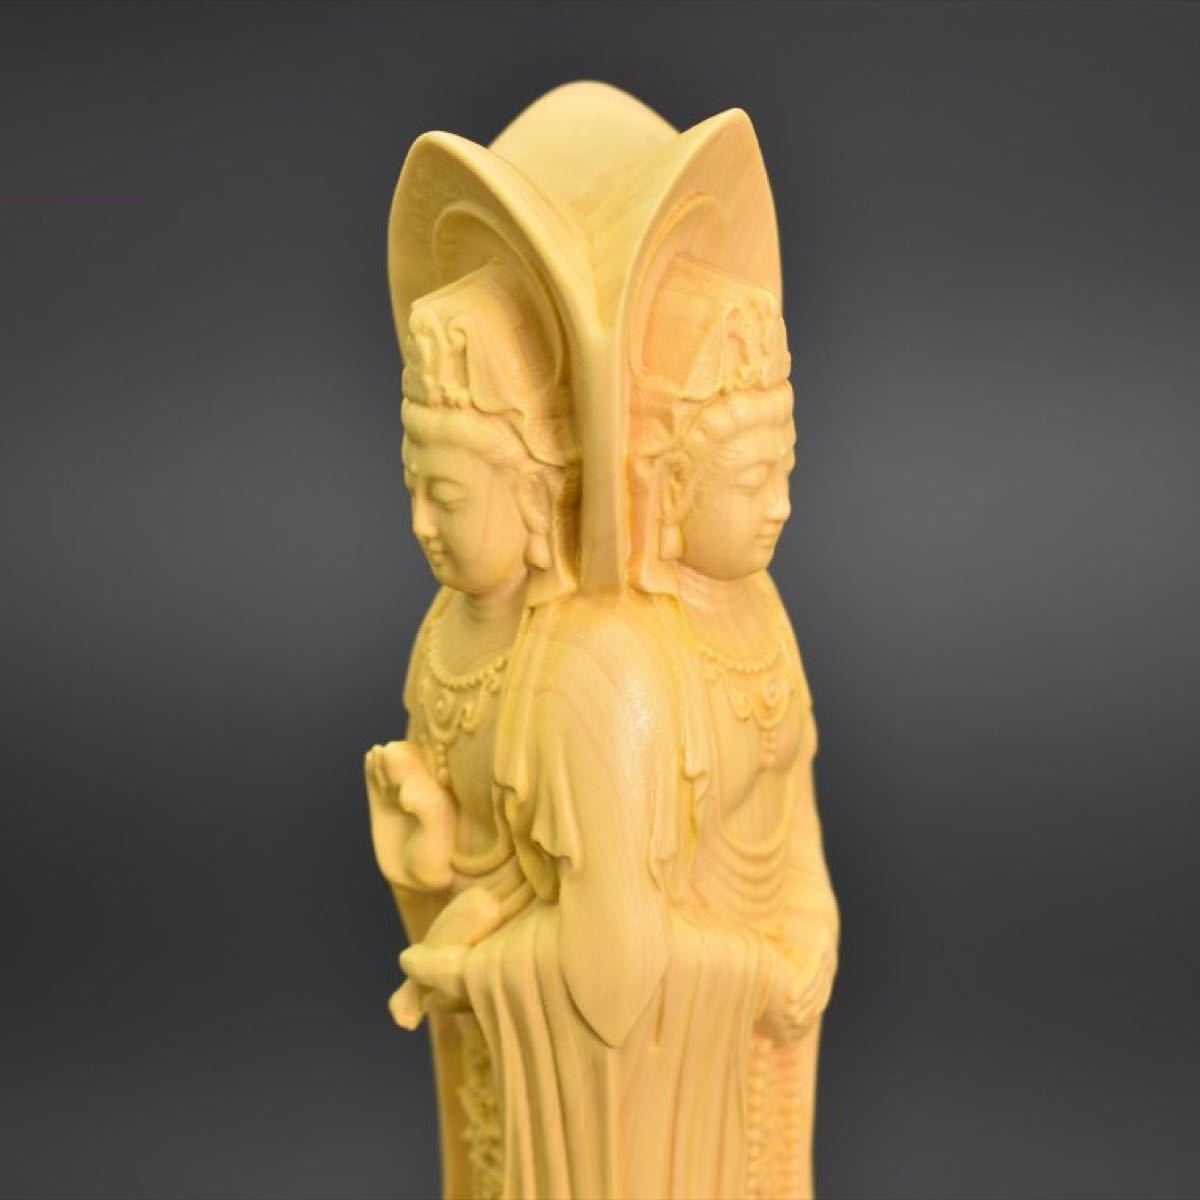 木彫り仏像　三面観音菩薩　 観音菩薩 仏像 木彫り 仏教美術 高品質 木彫